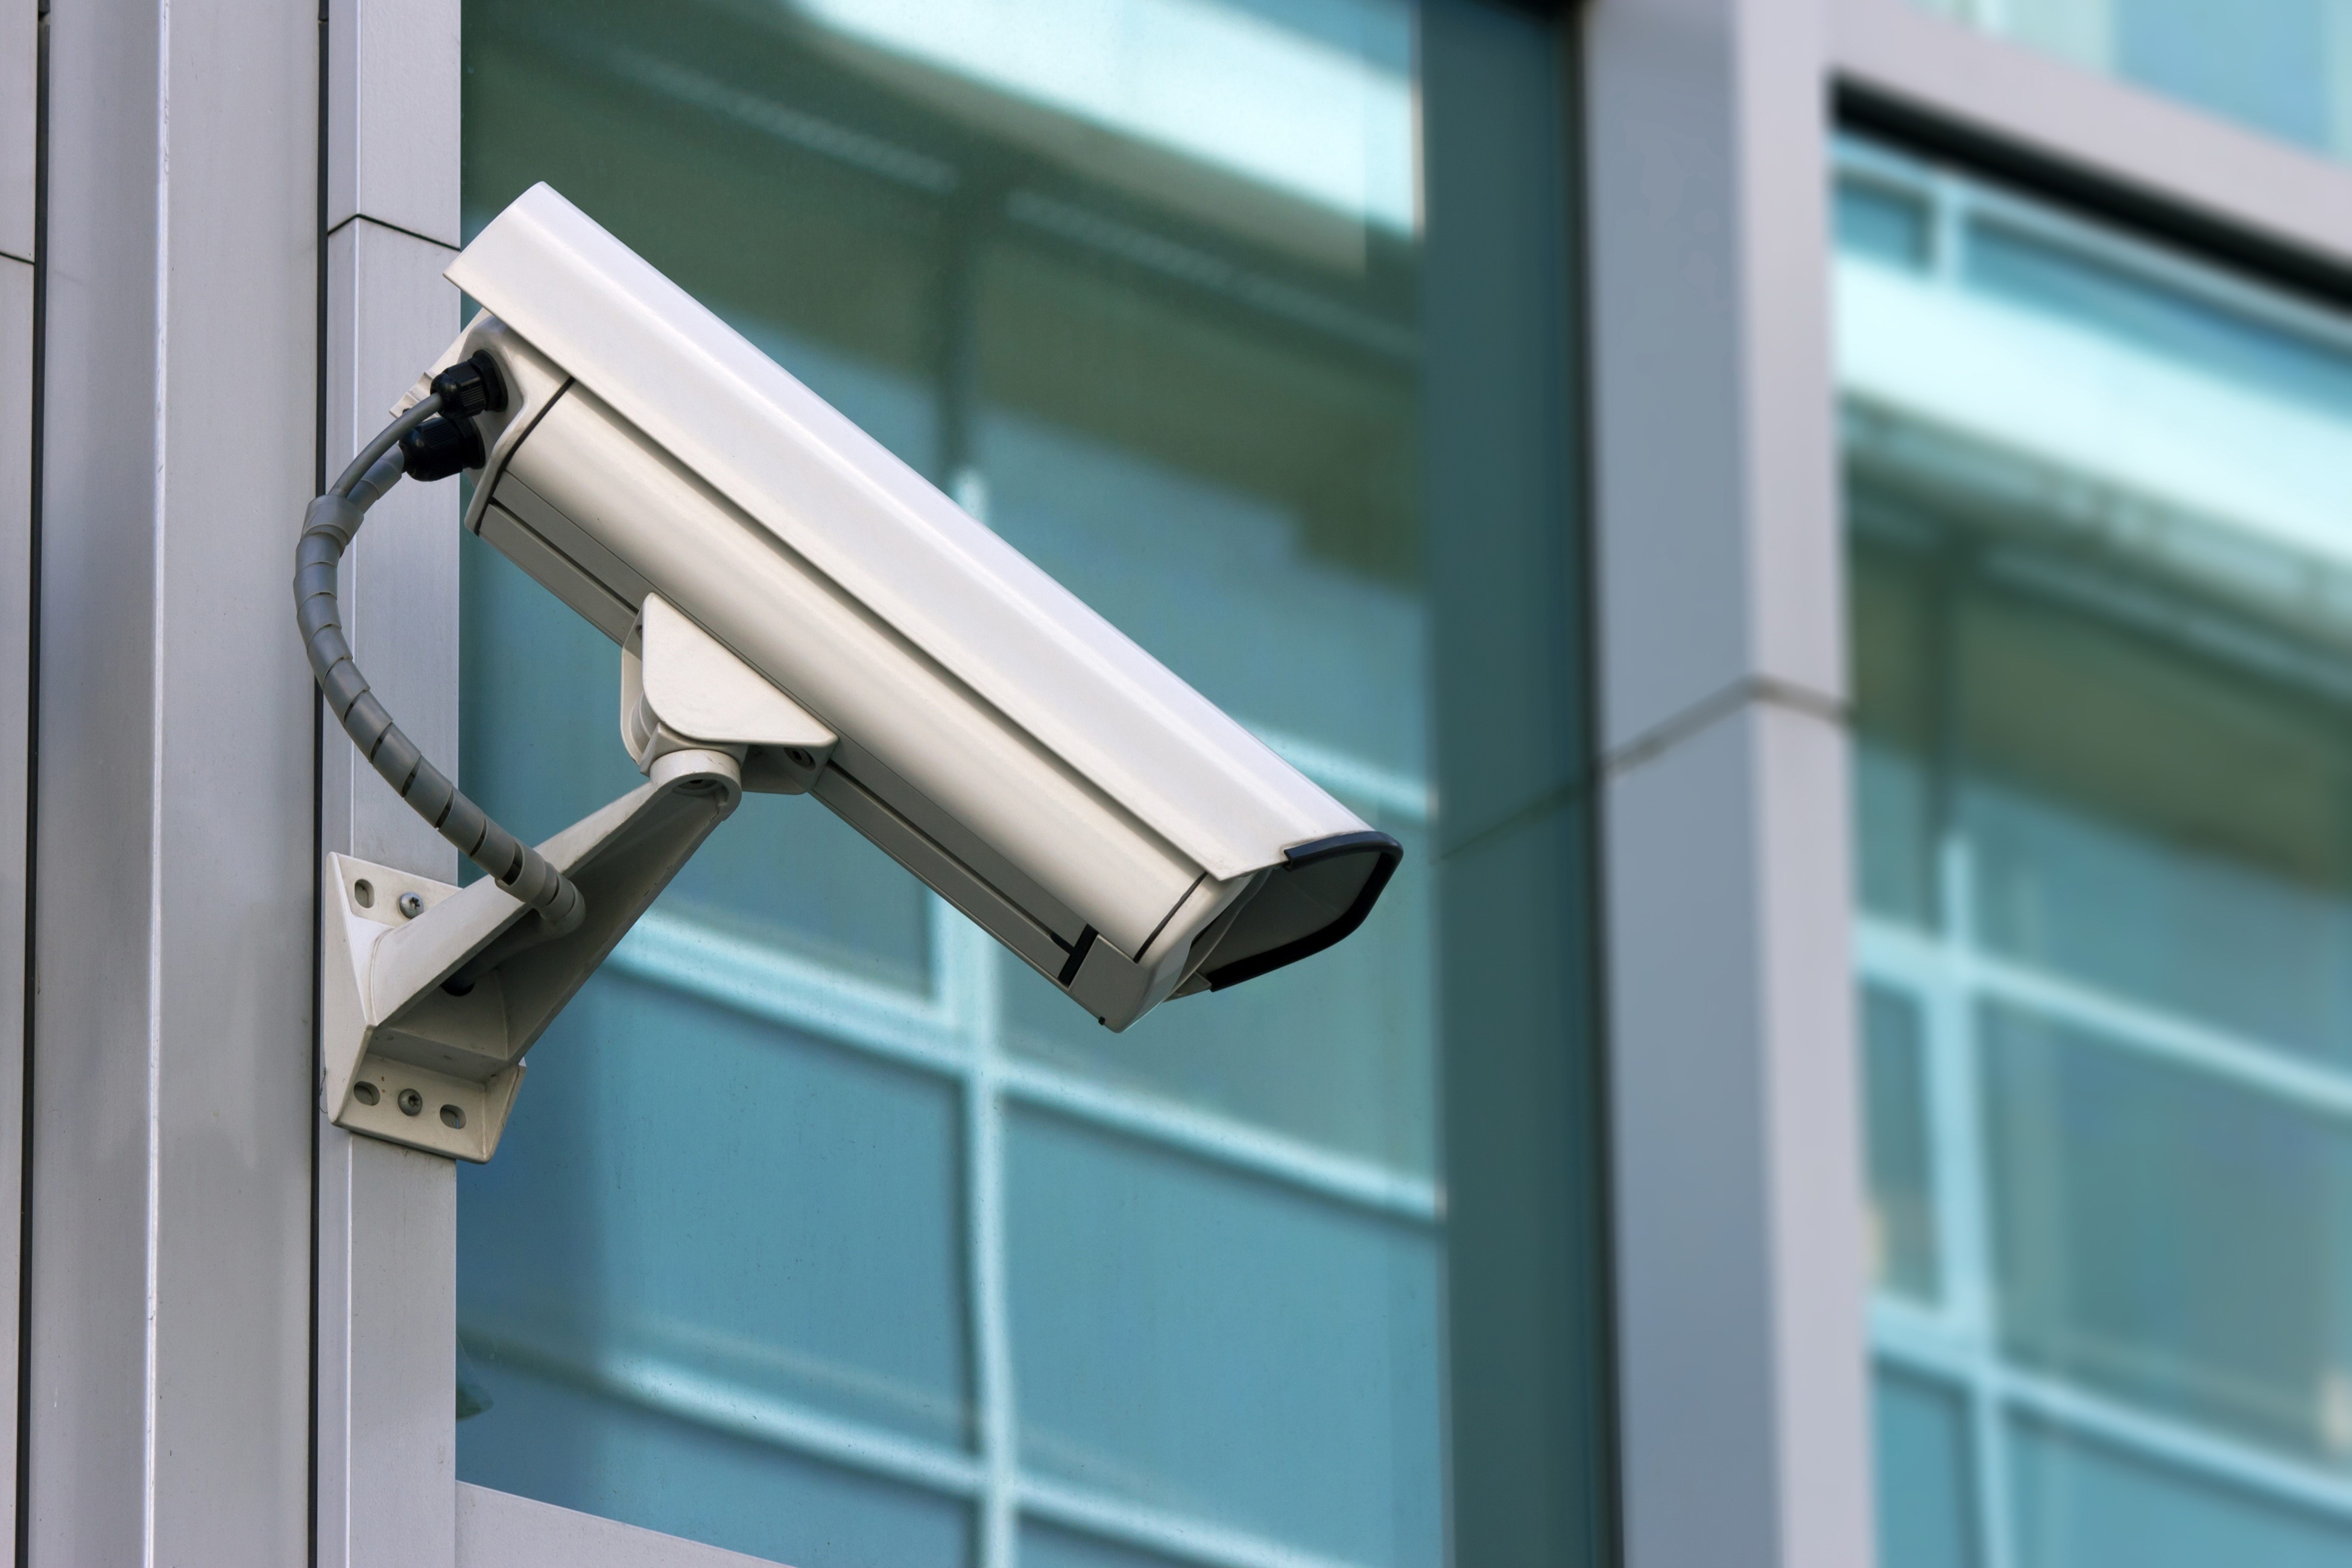 miscellanea, miscellaneous, camera, security, protection, safety, cctv, video surveillance